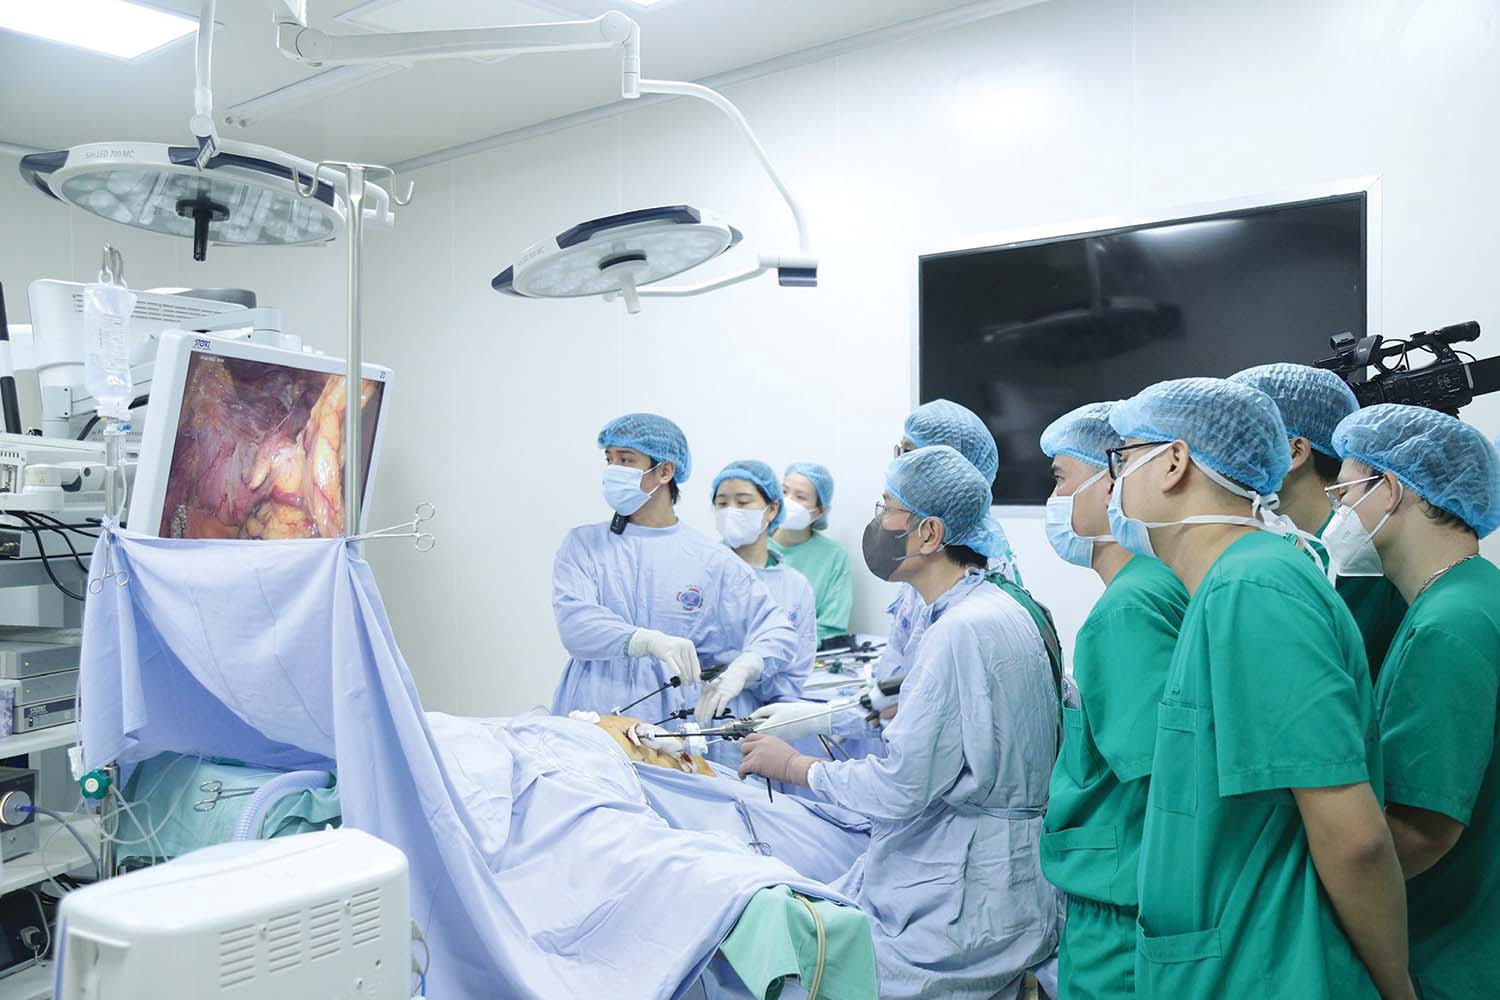 Ngành y tế Việt Nam đã ứng dụng nhiều kỹ thuật chuyên sâu trong chẩn đoán, điều trị bệnh nặng và phức tạp